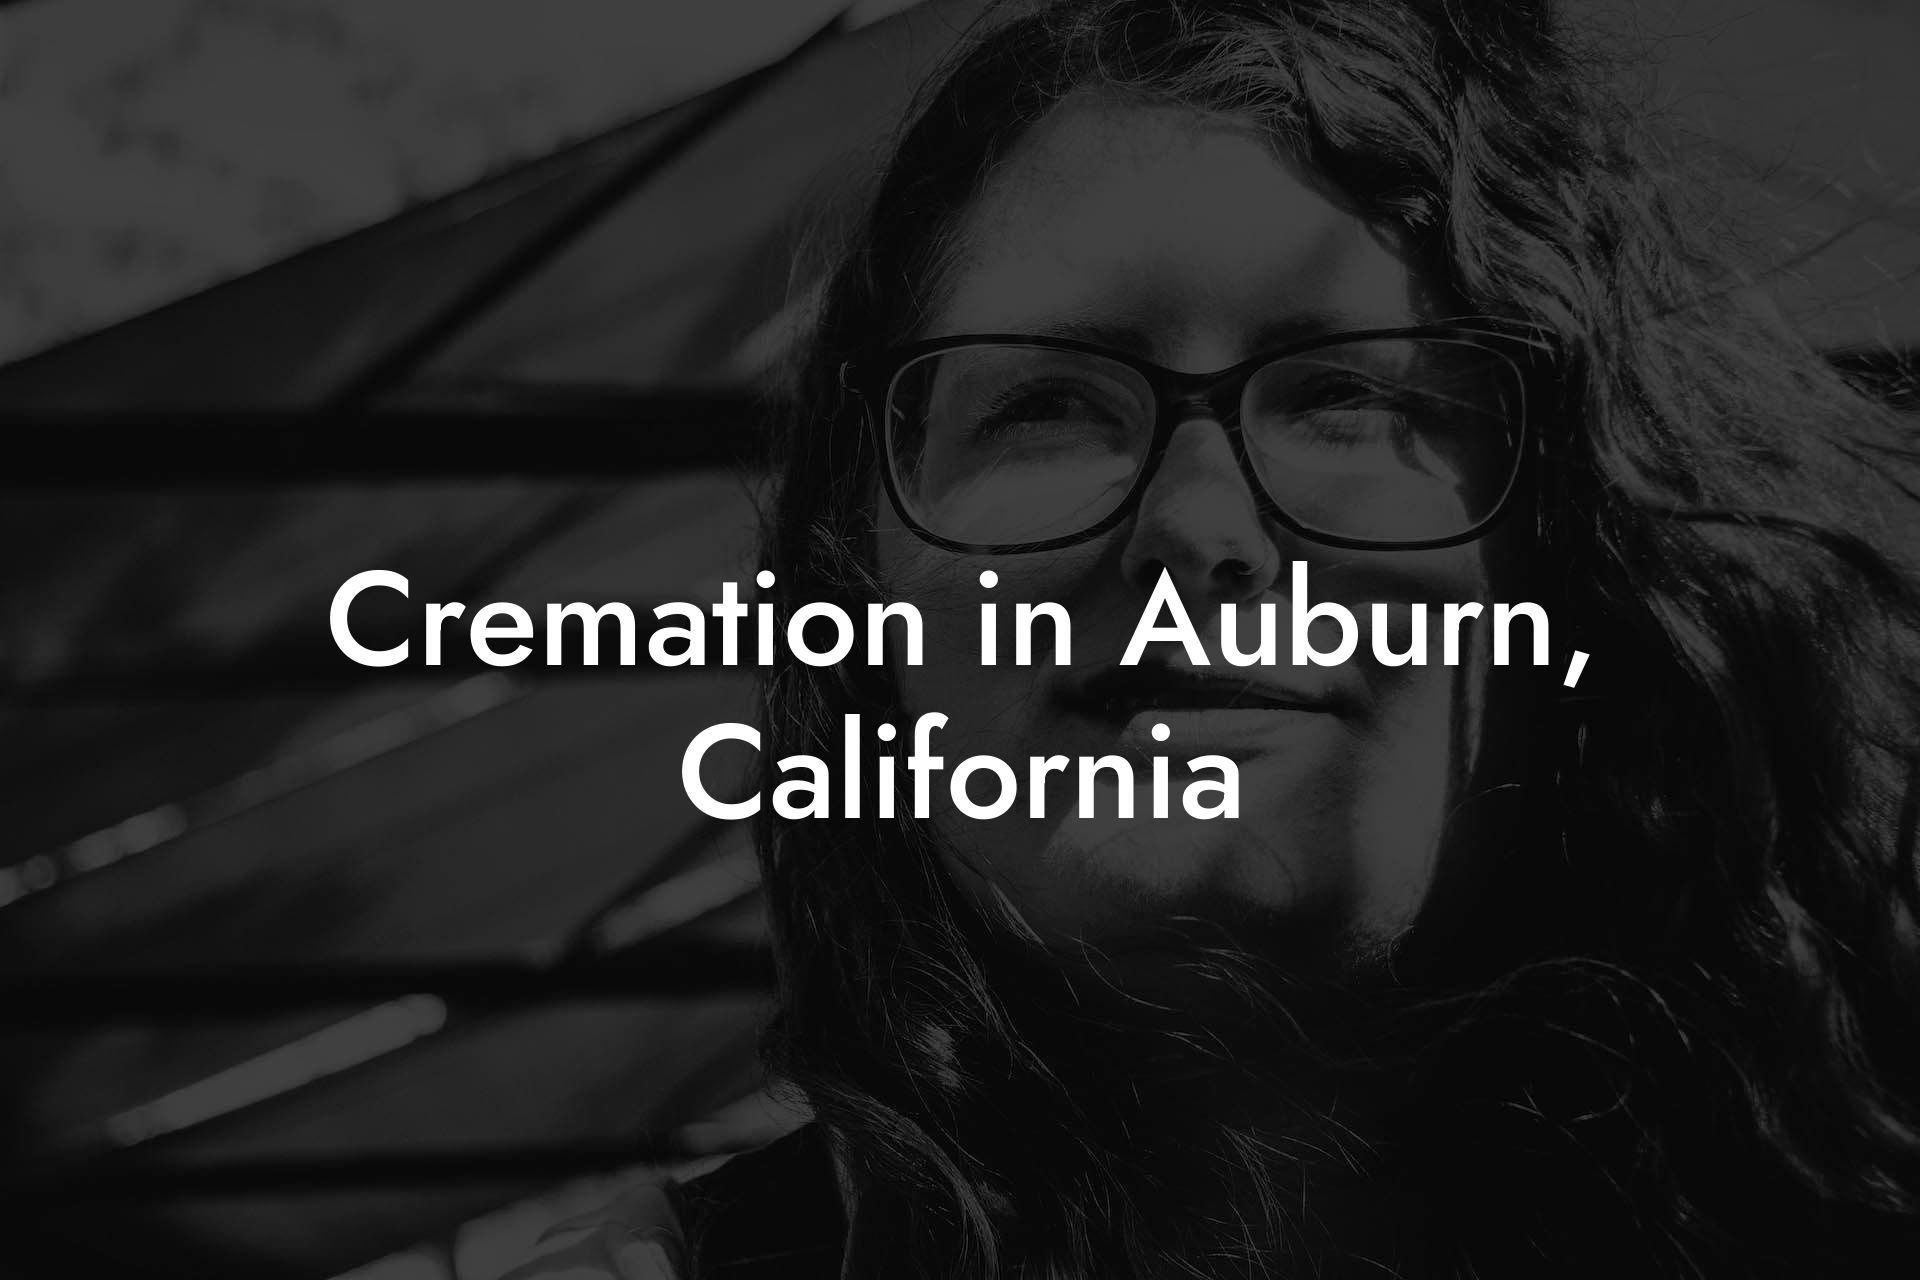 Cremation in Auburn, California